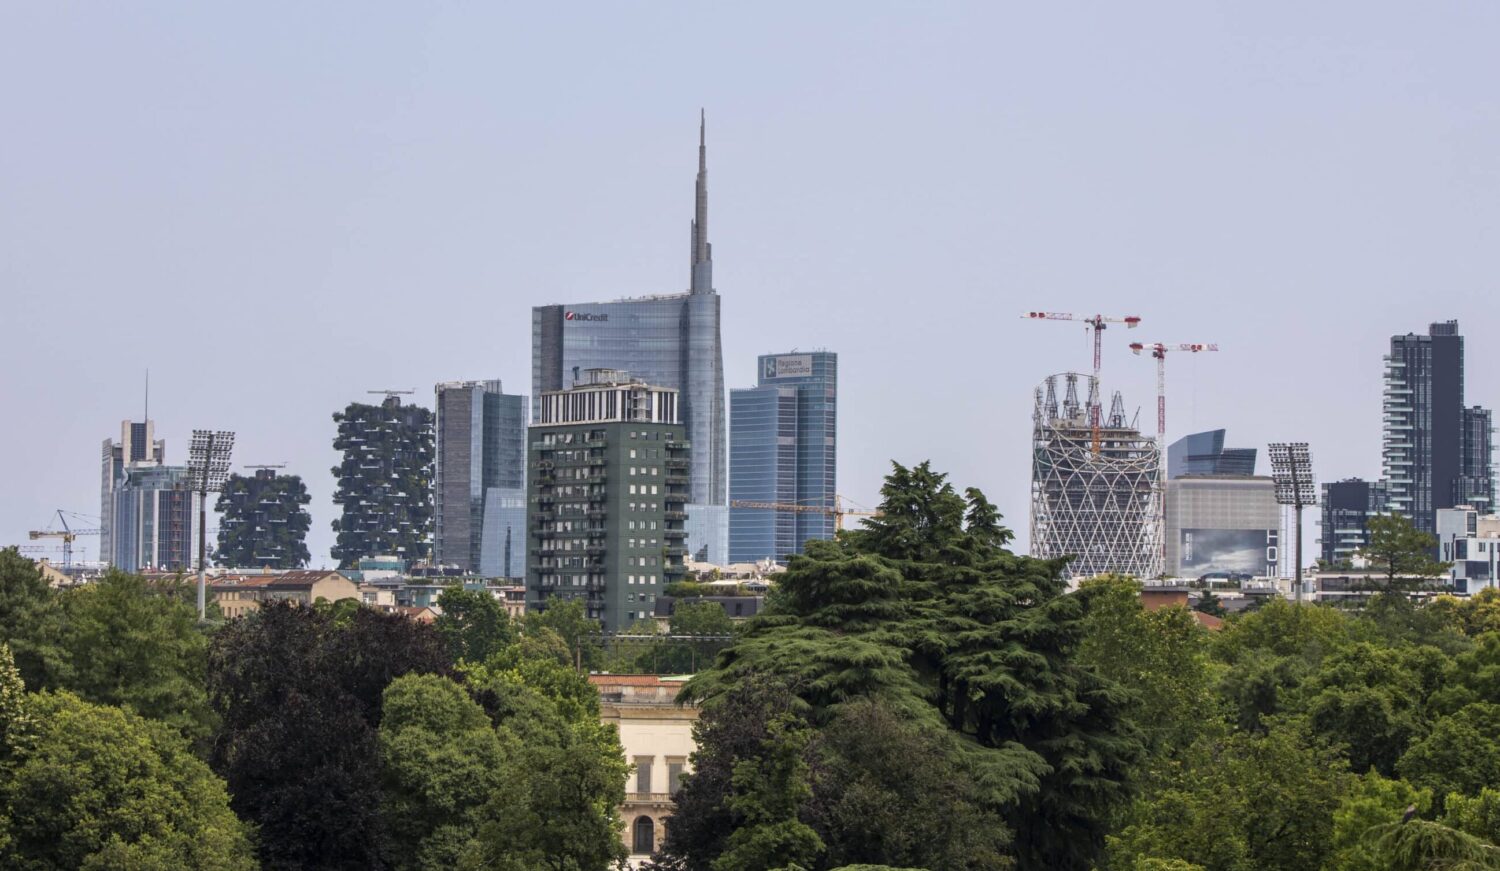 Inchiesta sui grattacieli a Milano. Scontro in Procura sulla normativa edilizia